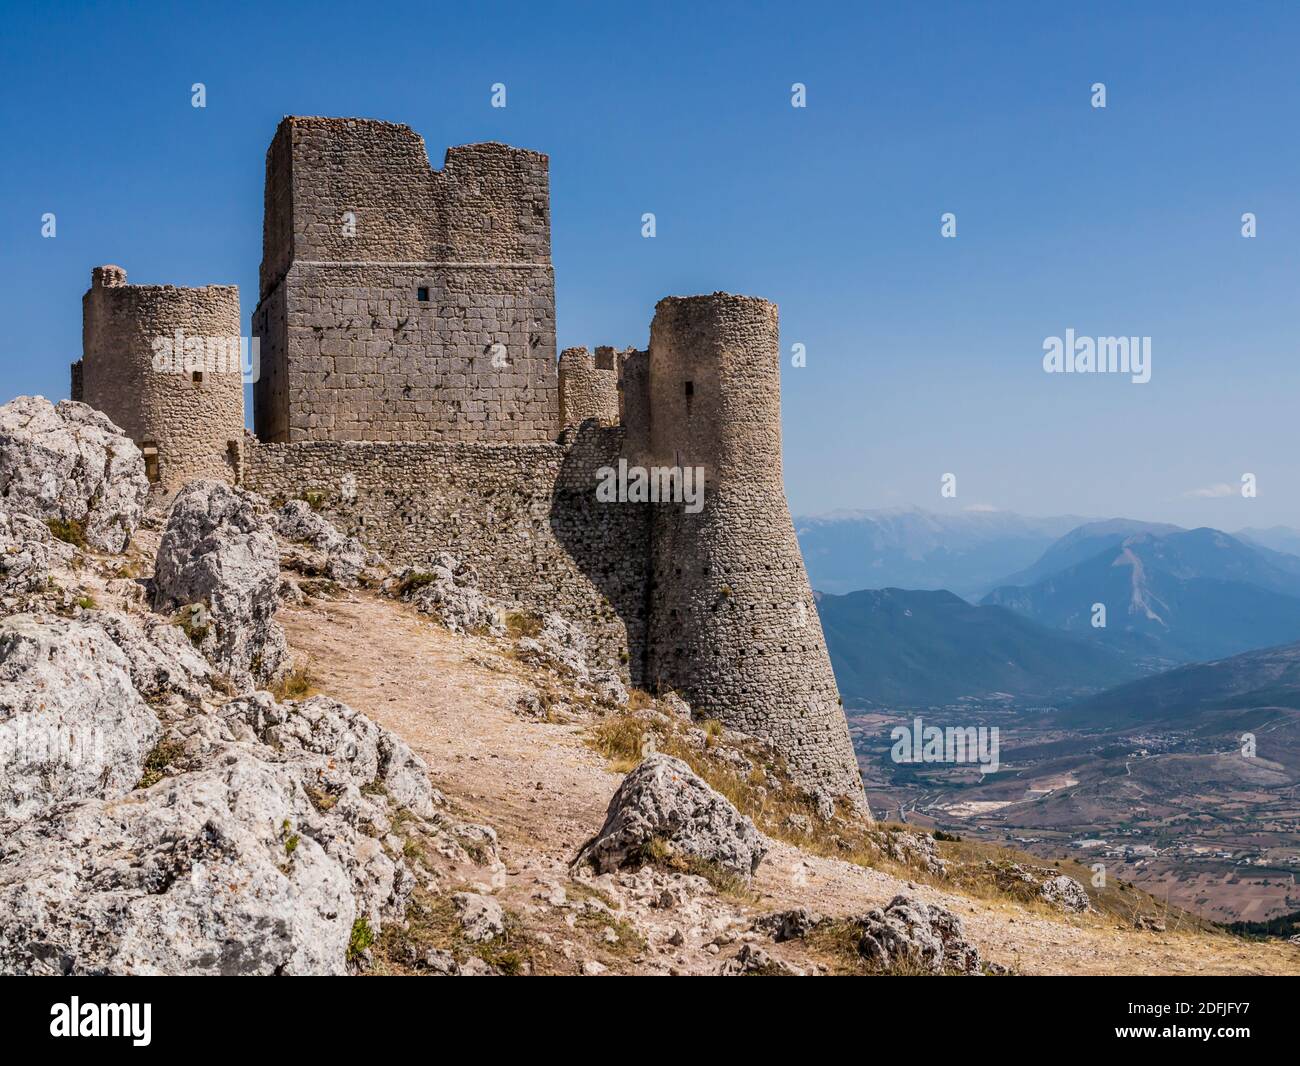 Vue impressionnante sur les ruines de Rocca Calascio, ancienne forteresse médiévale dans le parc national de Gran Sasso, région des Abruzzes, Italie Banque D'Images